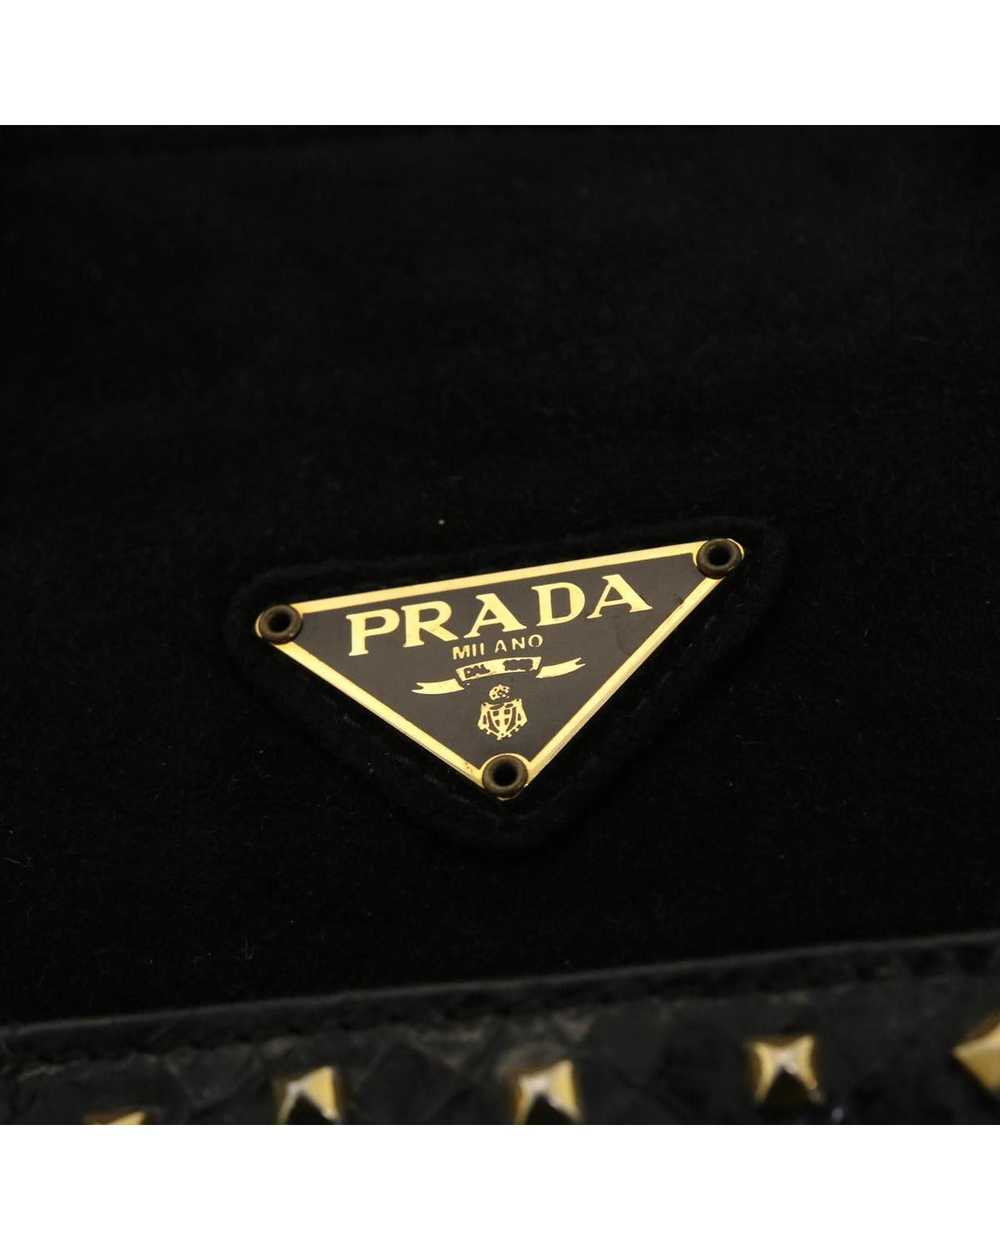 Prada Black Suede Hand Bag - image 9